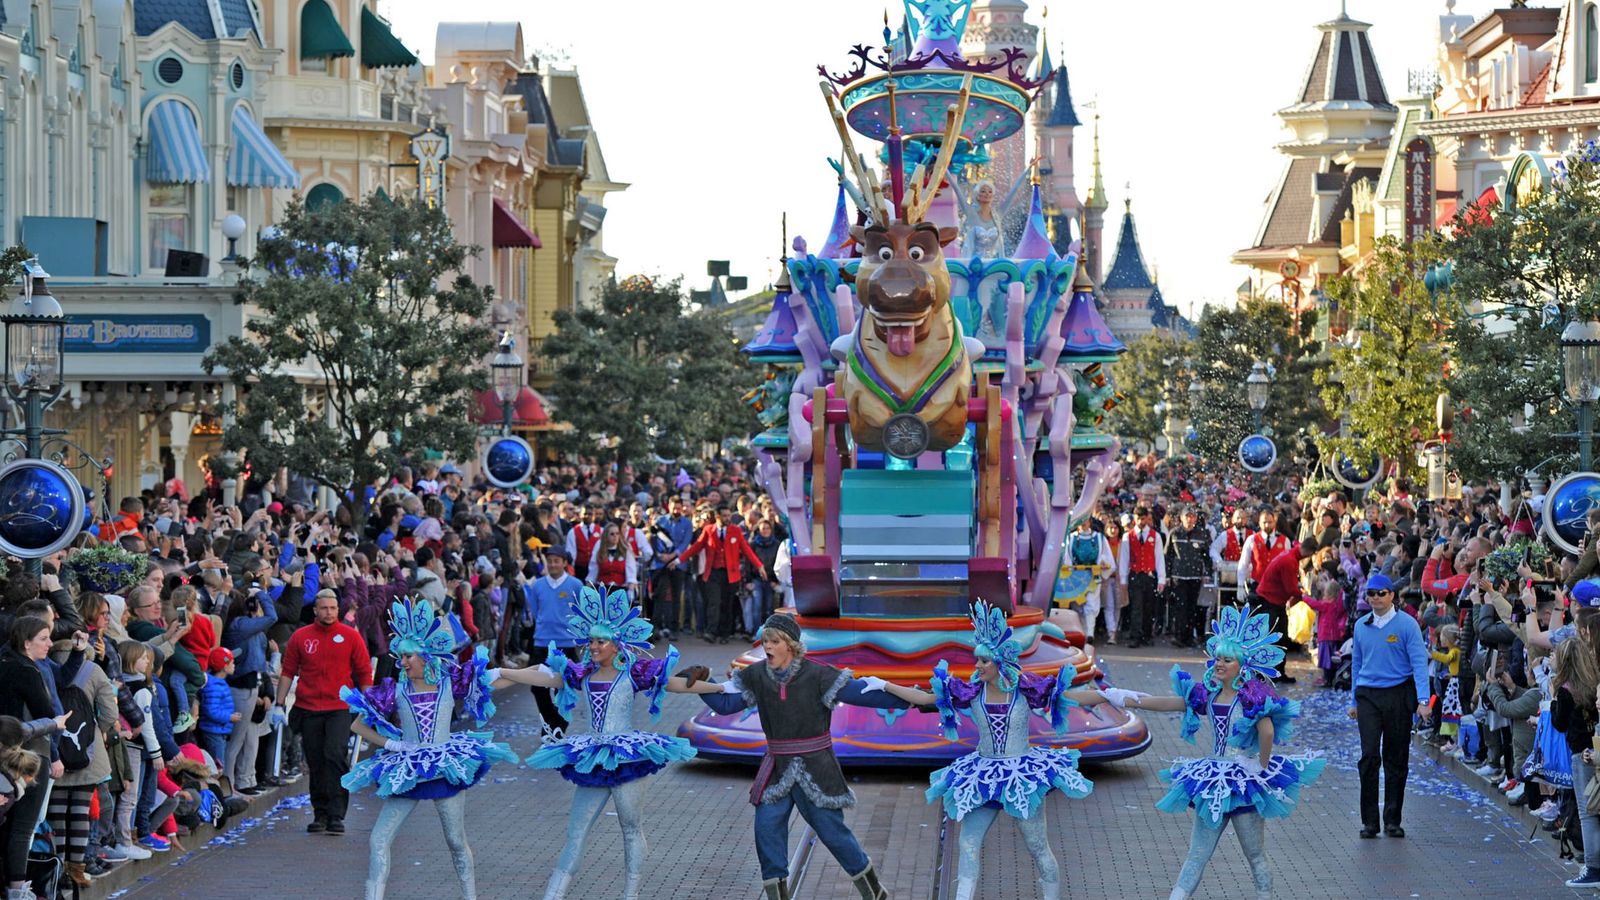 Foto: Cabalgata del parque Disneyland París. (Cortesía de Disney)